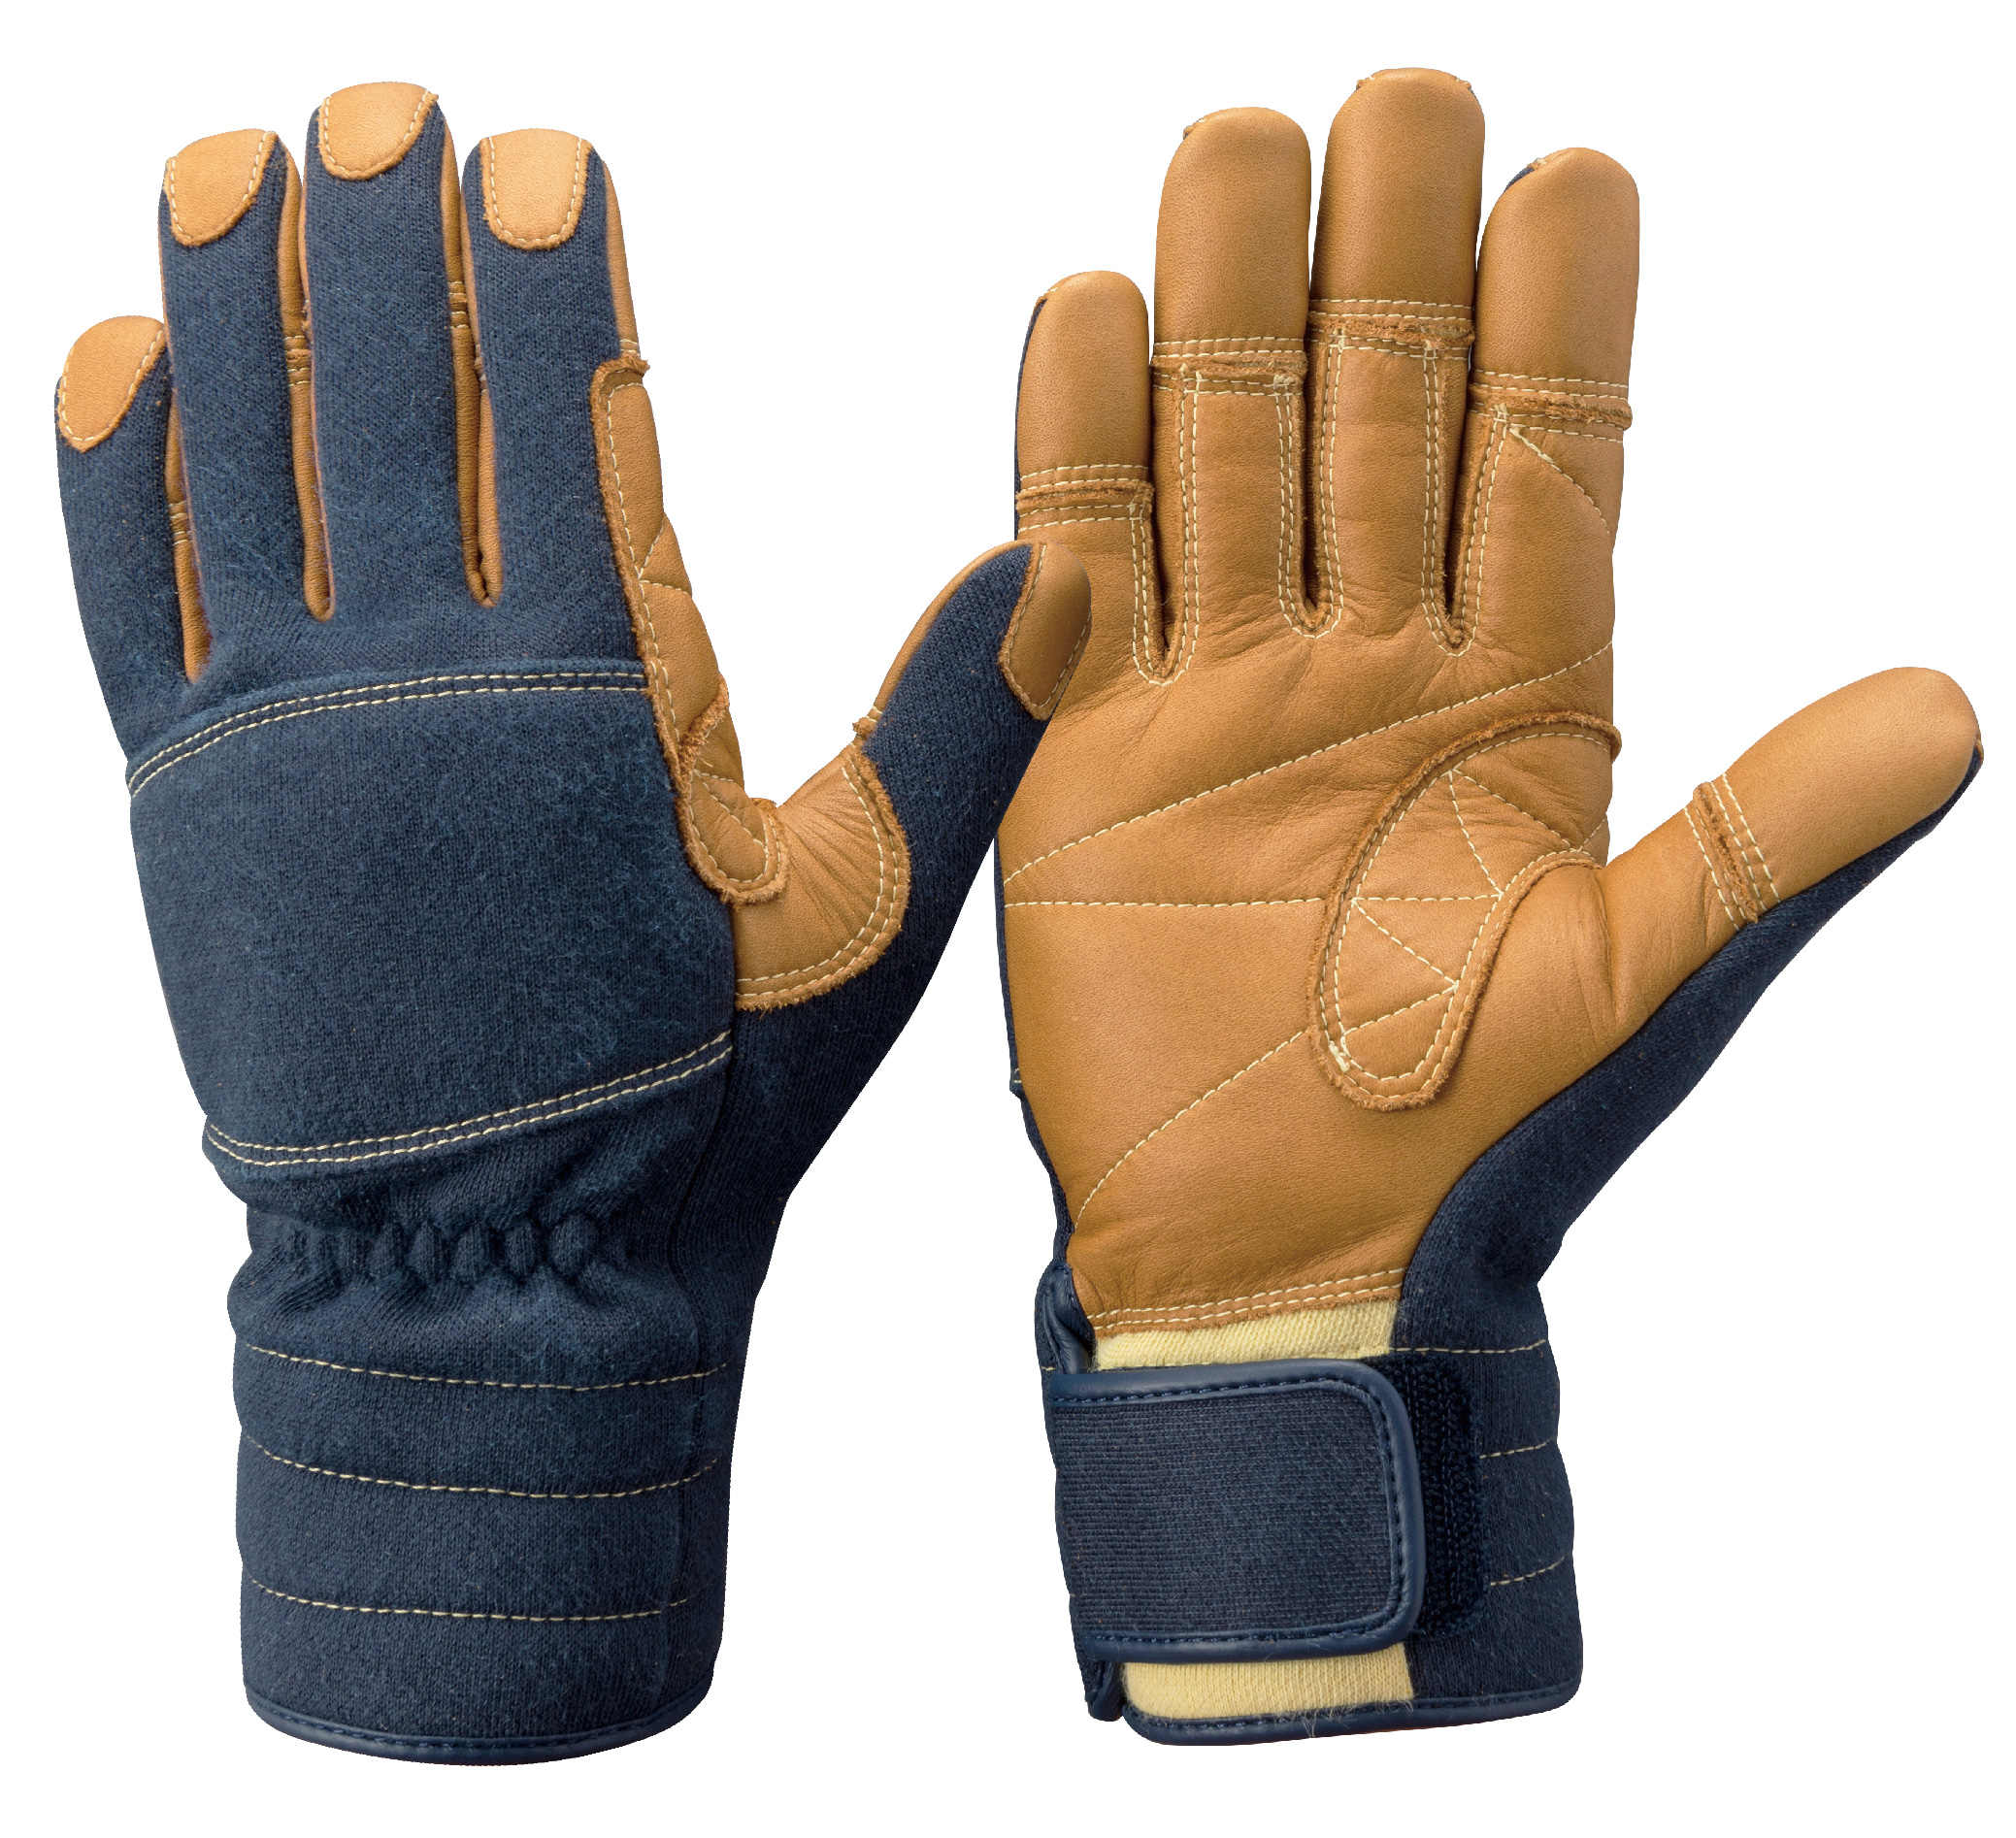 ケブラー®繊維製手袋2011ガイドライン対応